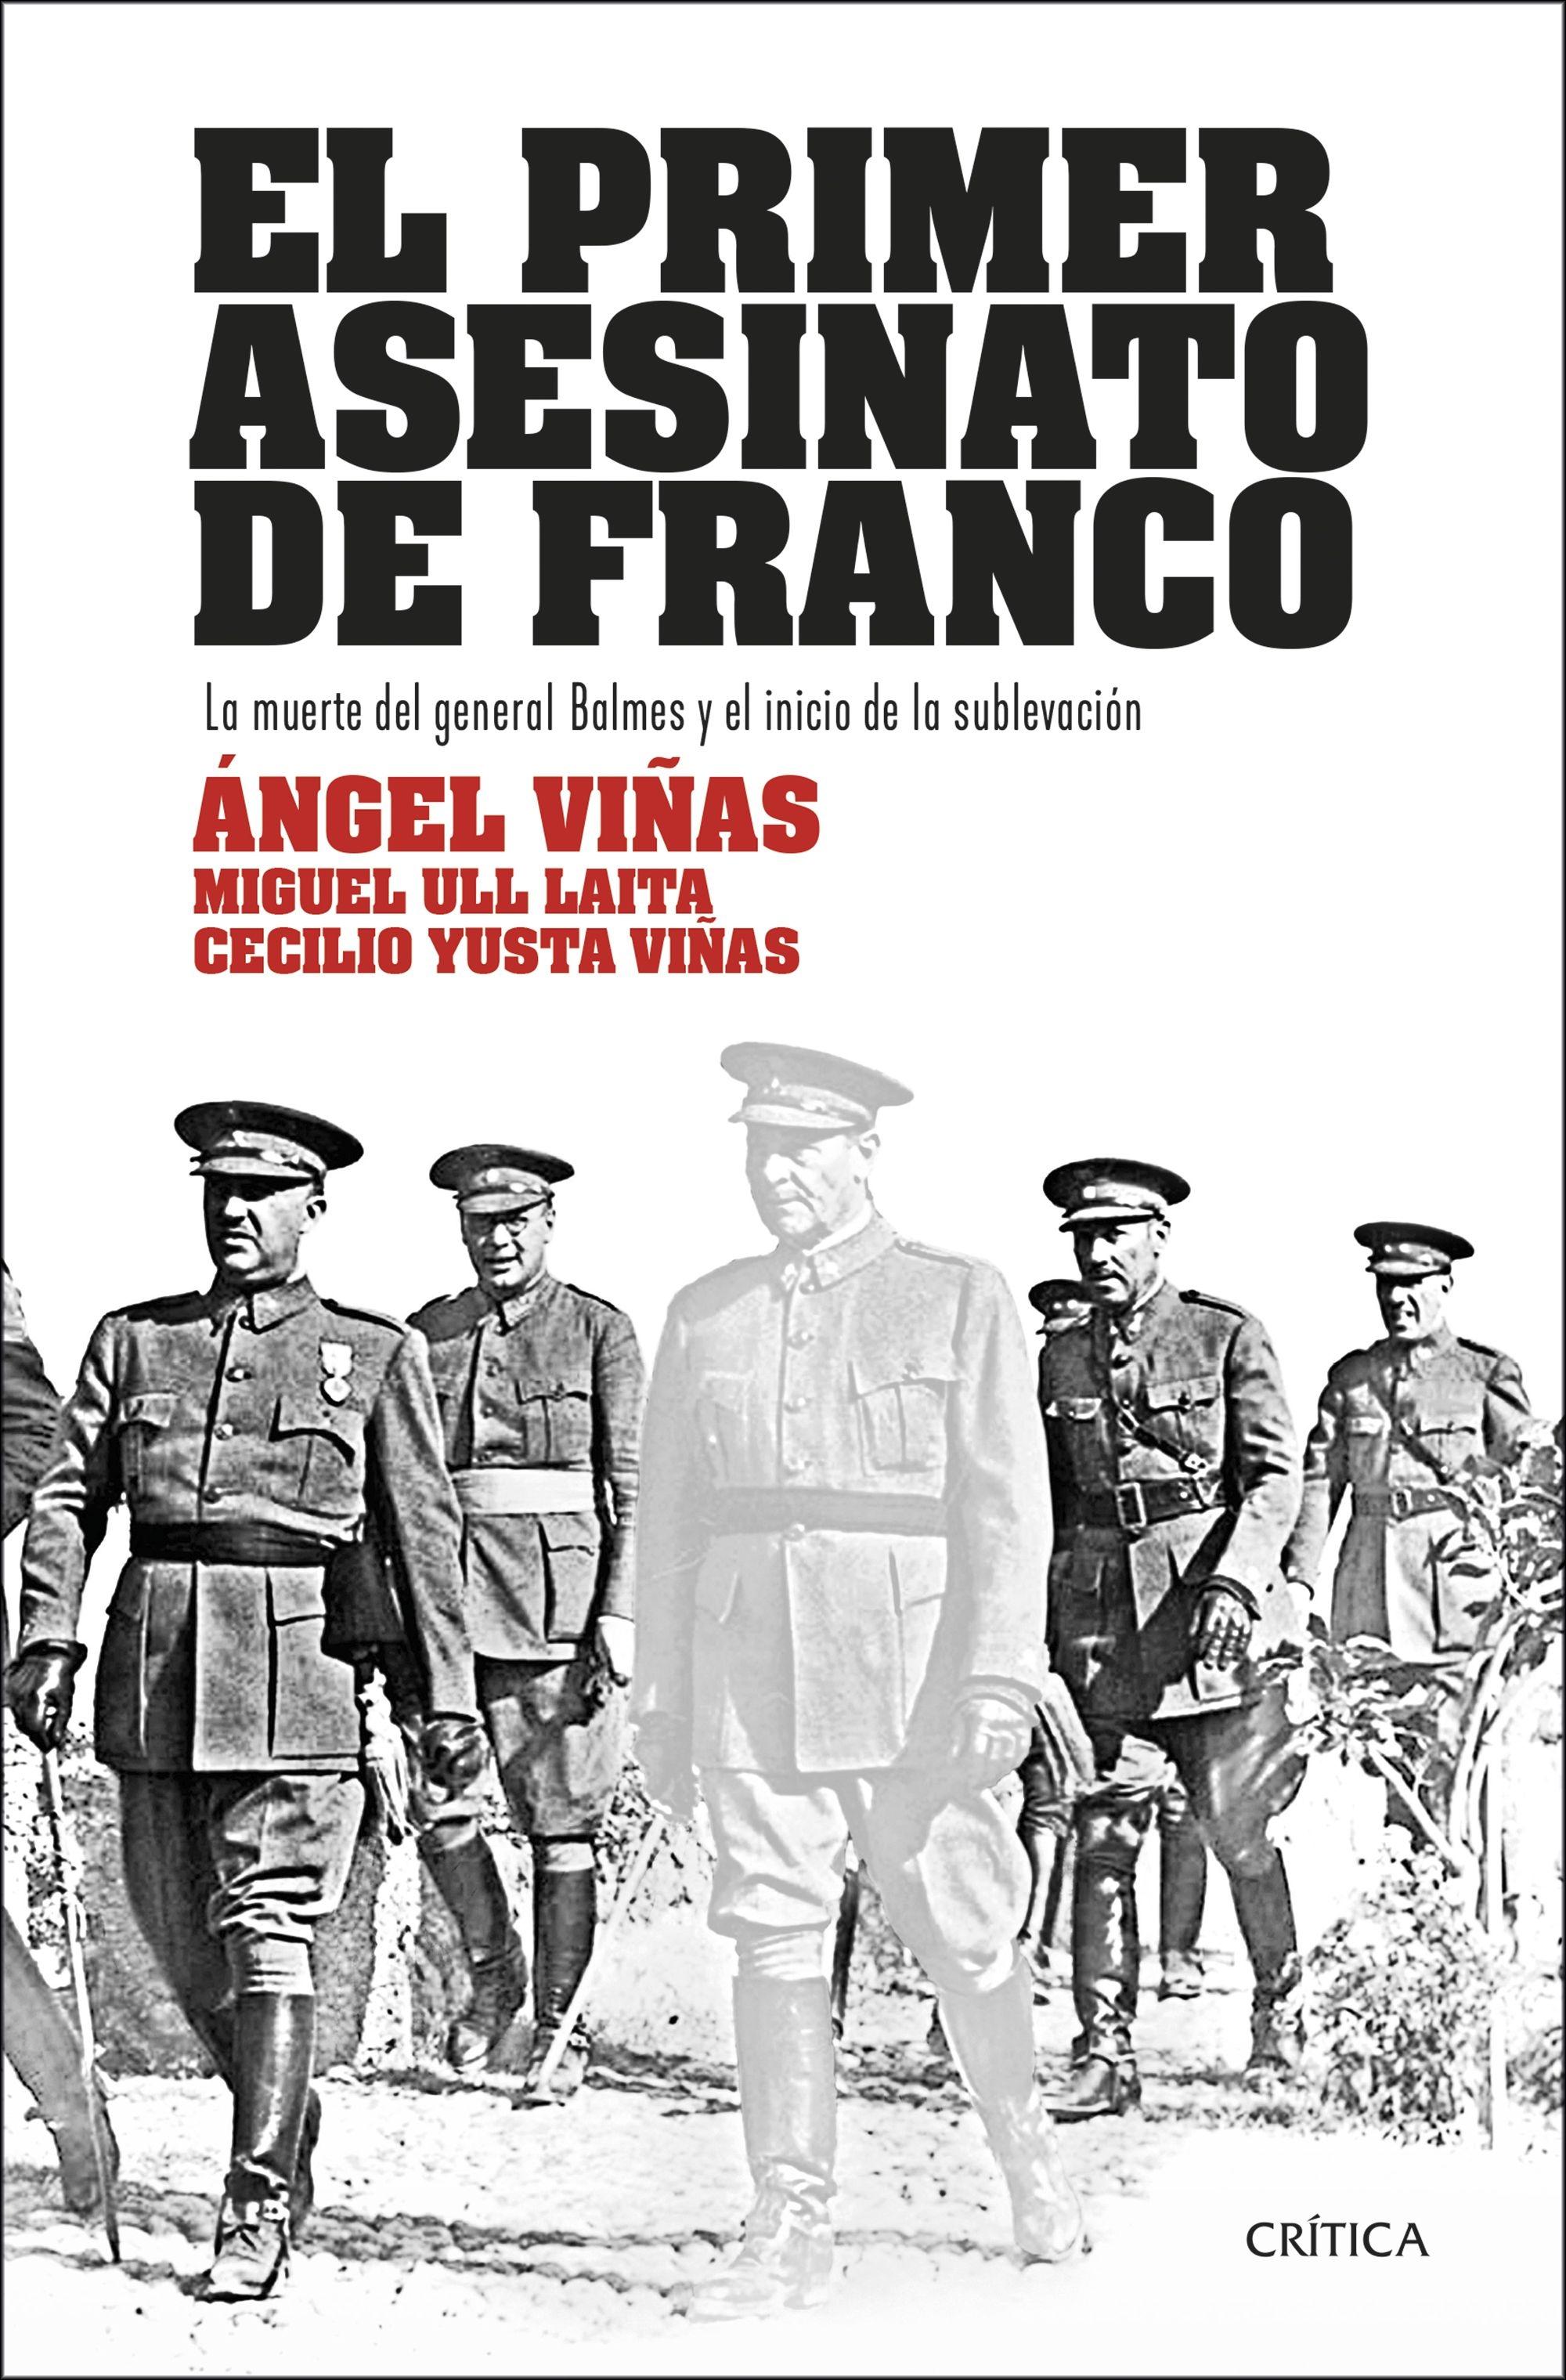 El primer asesinato de Franco "La muerte del general Balmes y el inicio de la sublevación". 